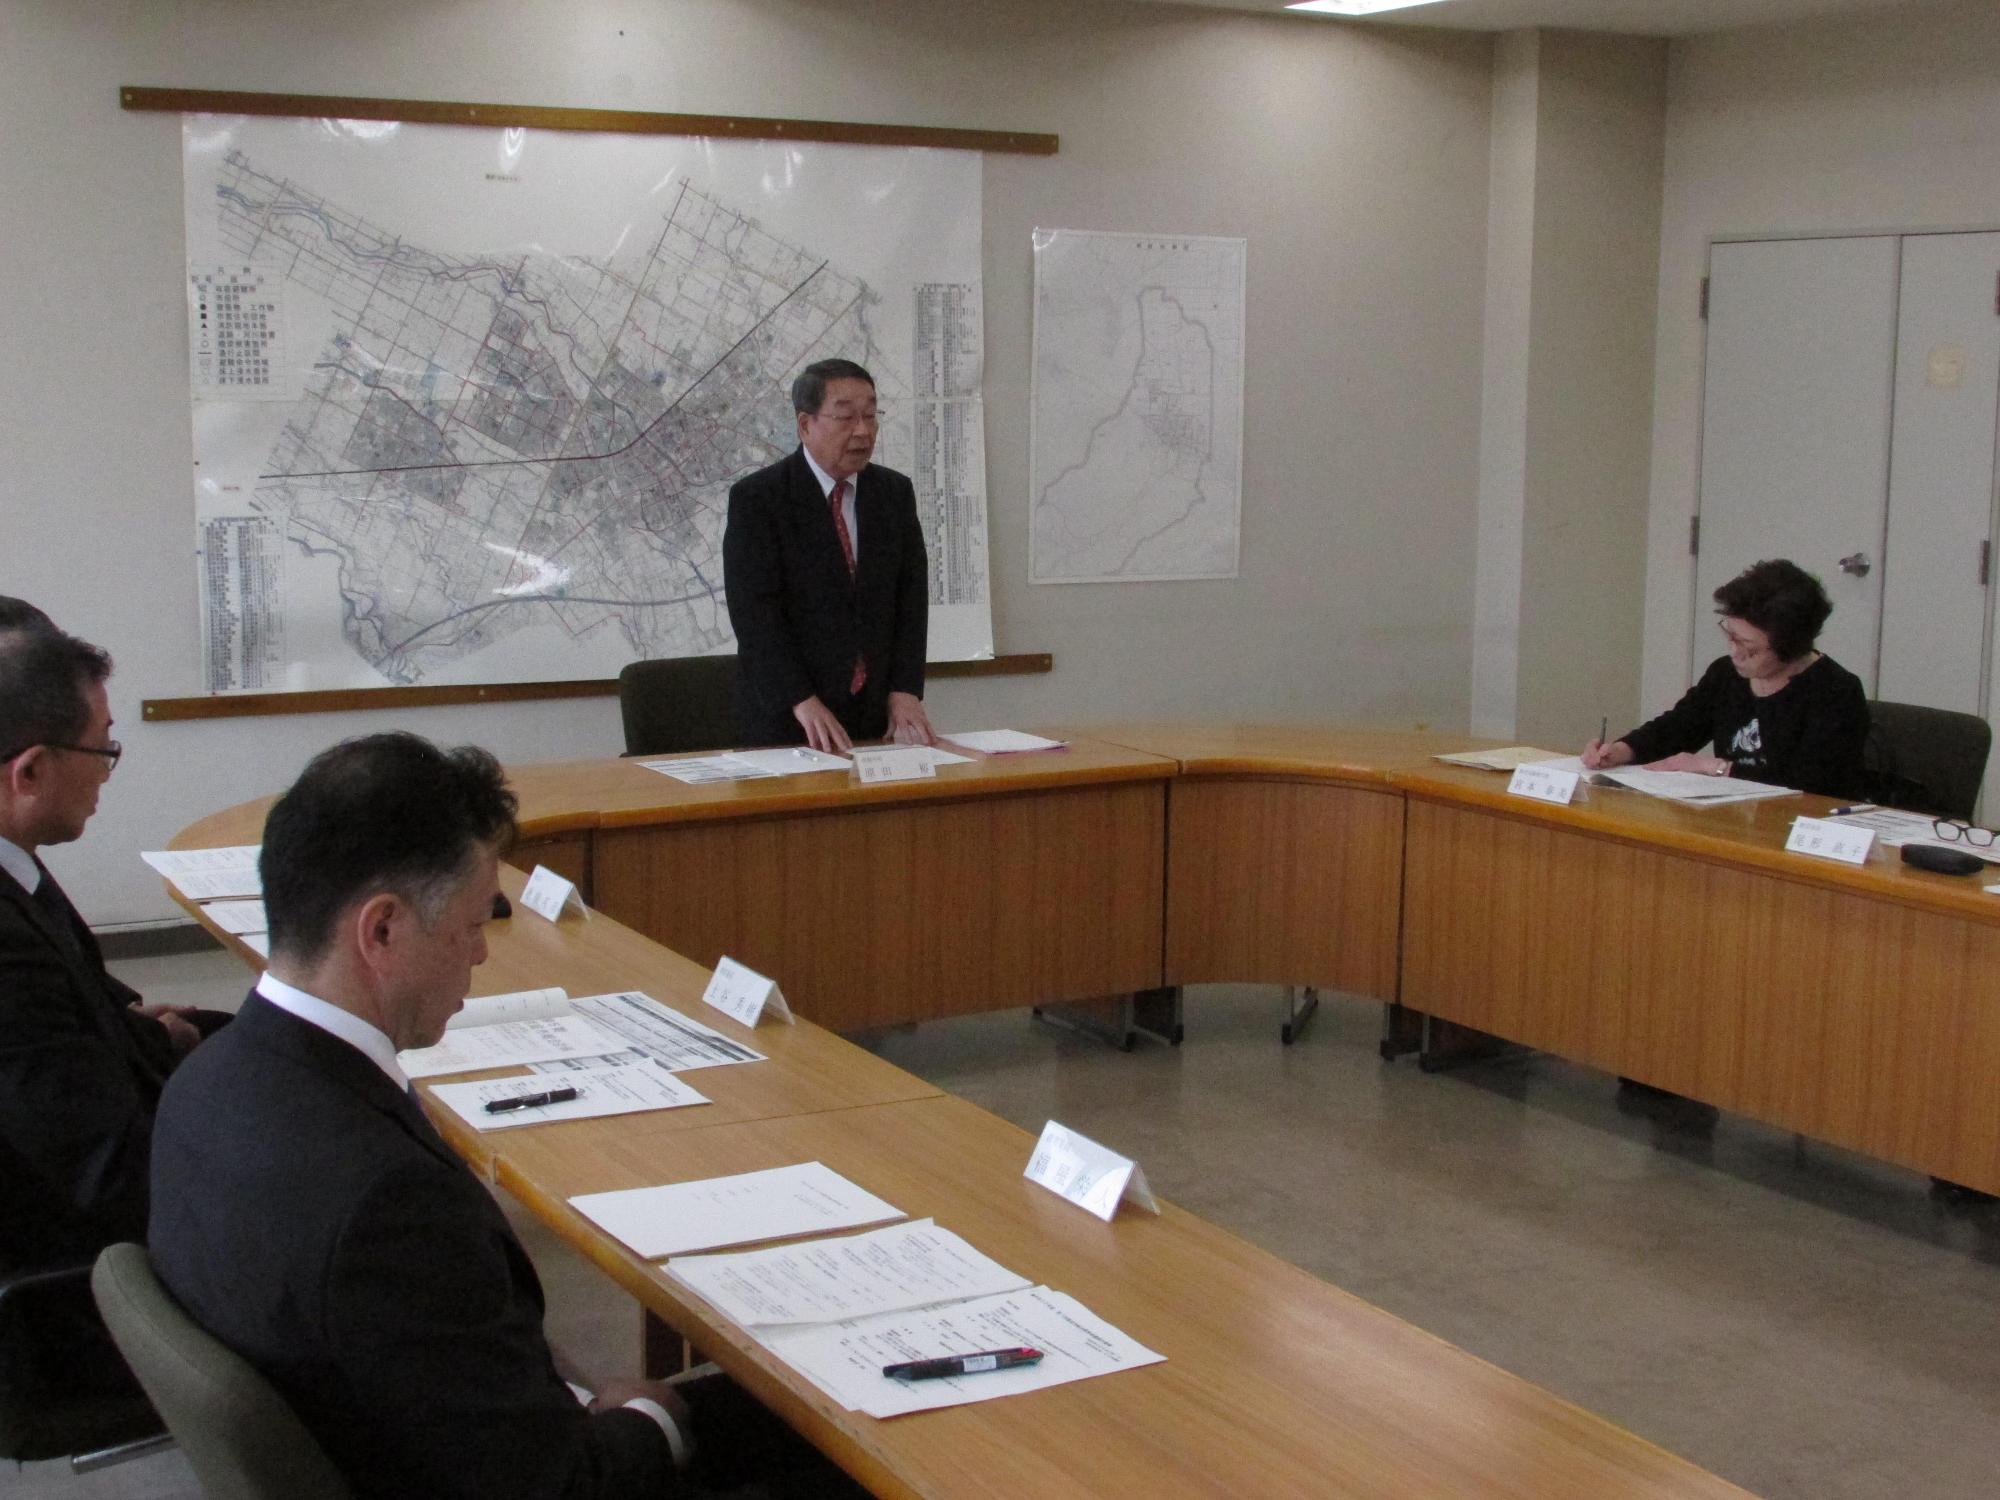 「平成30年度第1回恵庭市総合教育会議」にて挨拶をしている原田市長の写真